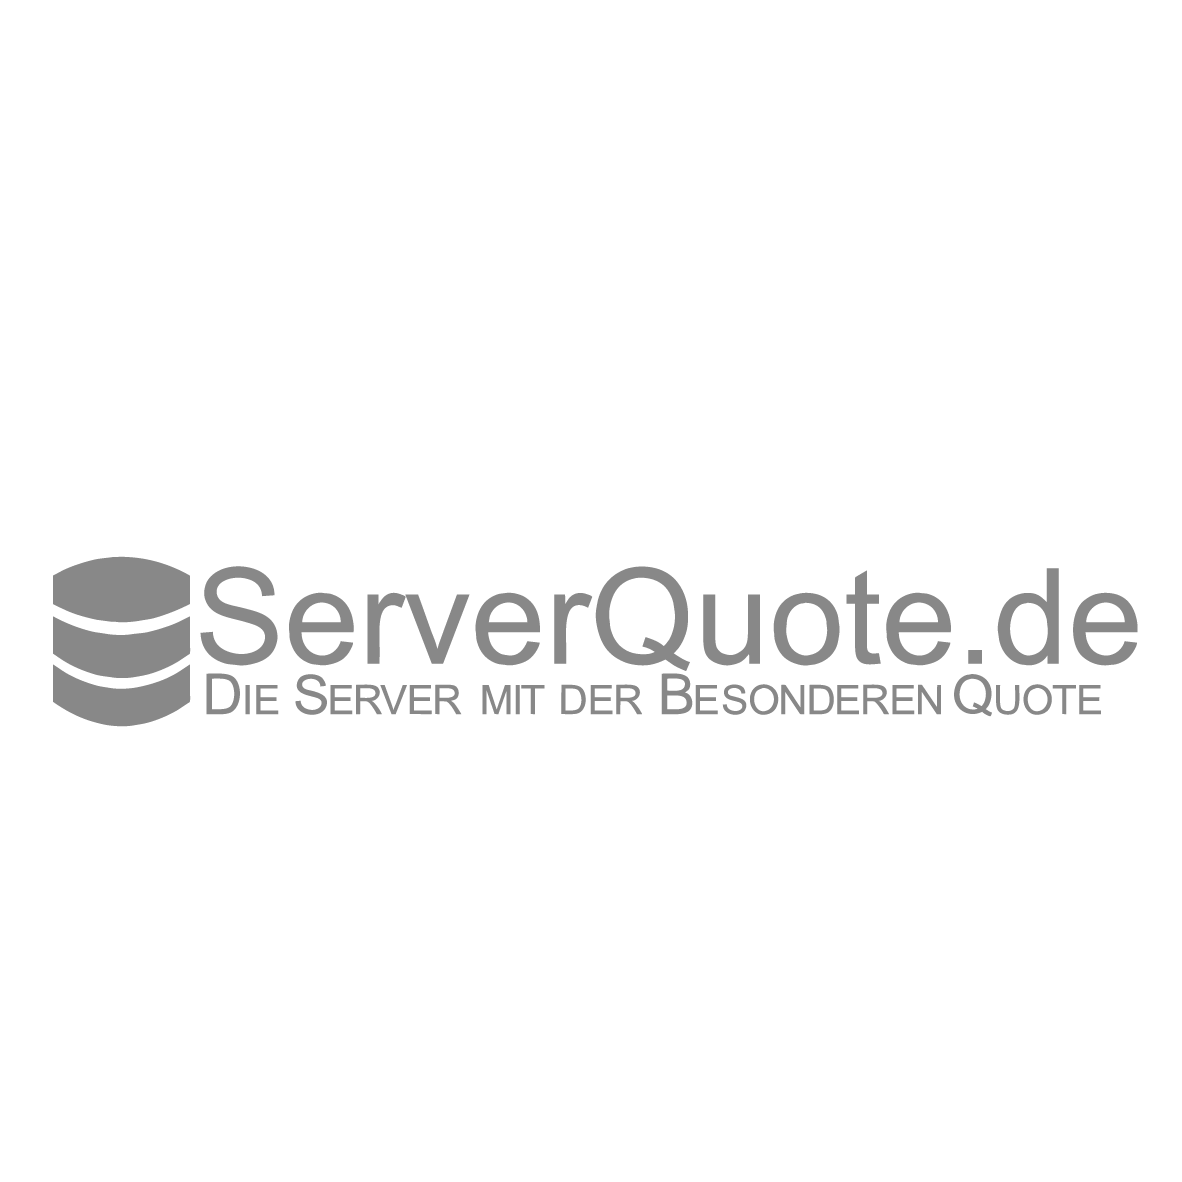 ServerQuote